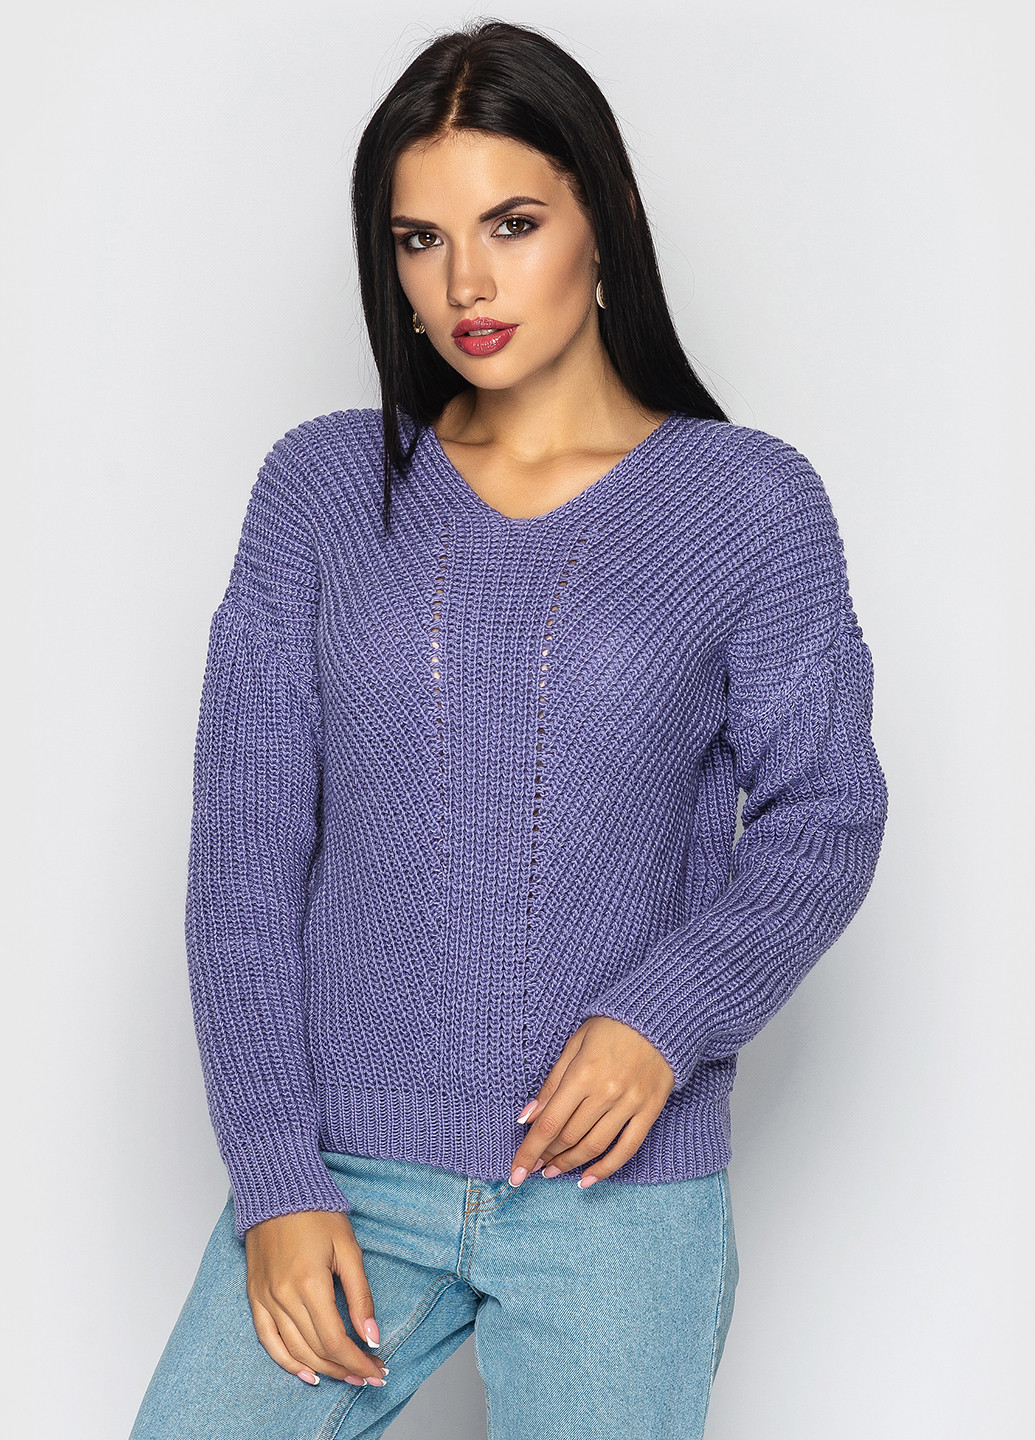 Лавандовый демисезонный пуловер пуловер Larionoff